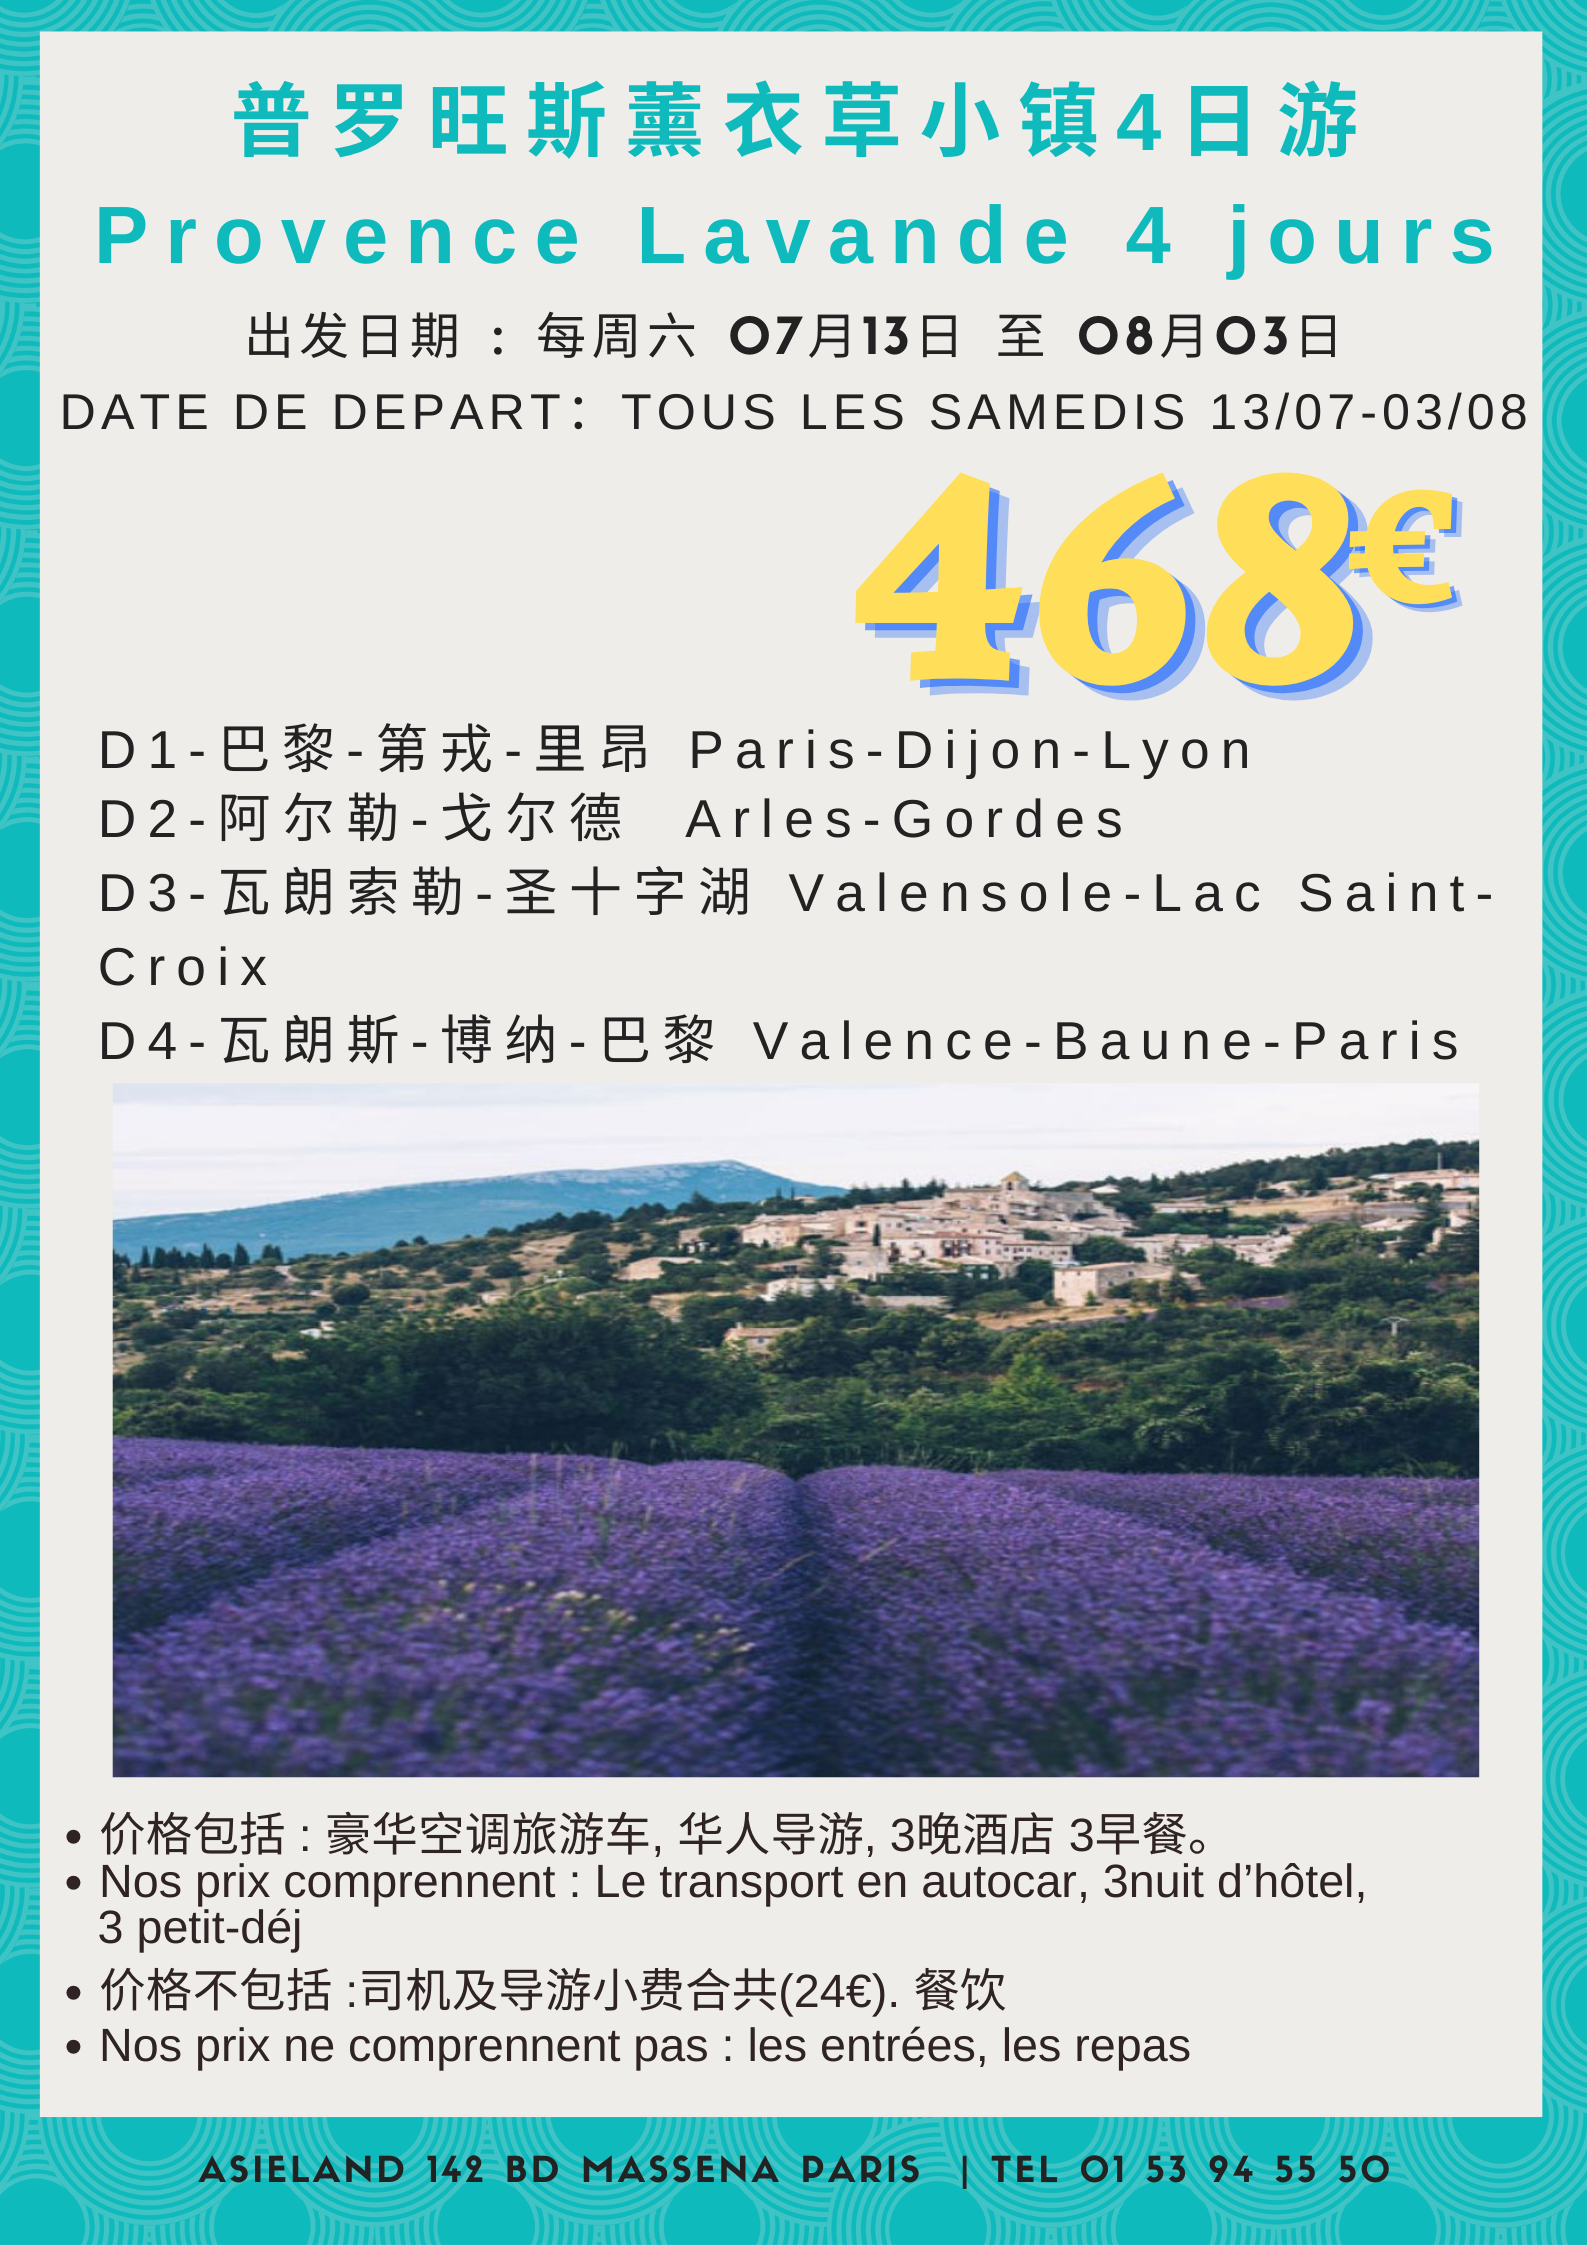 Ciruit Provence Lavande 4 jours